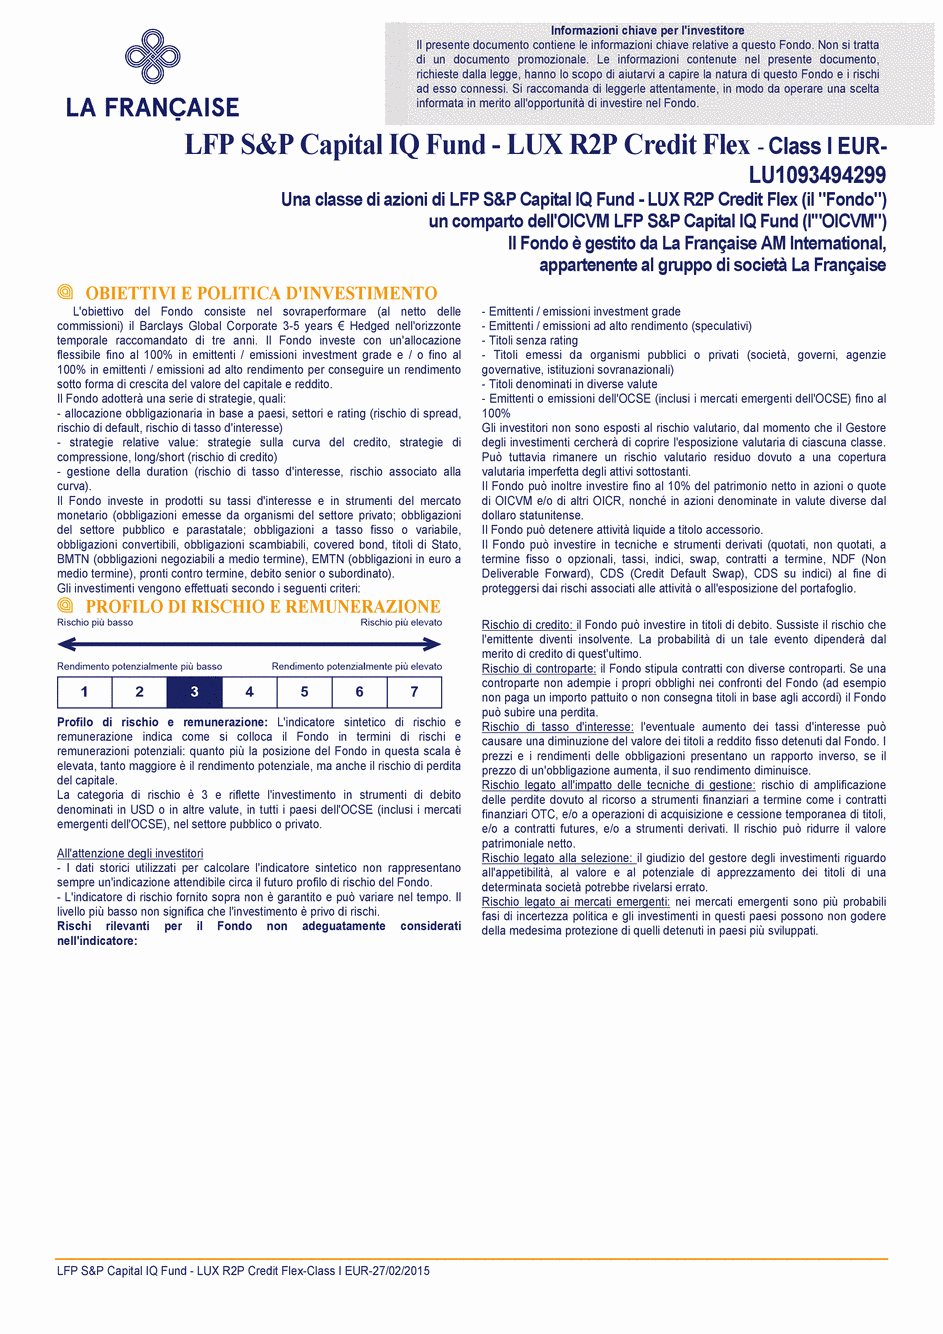 DICI LFP S&P Capital IQ Fund - LUX R2P Credit Flex I CAP EUR - 27/02/2015 - Italien